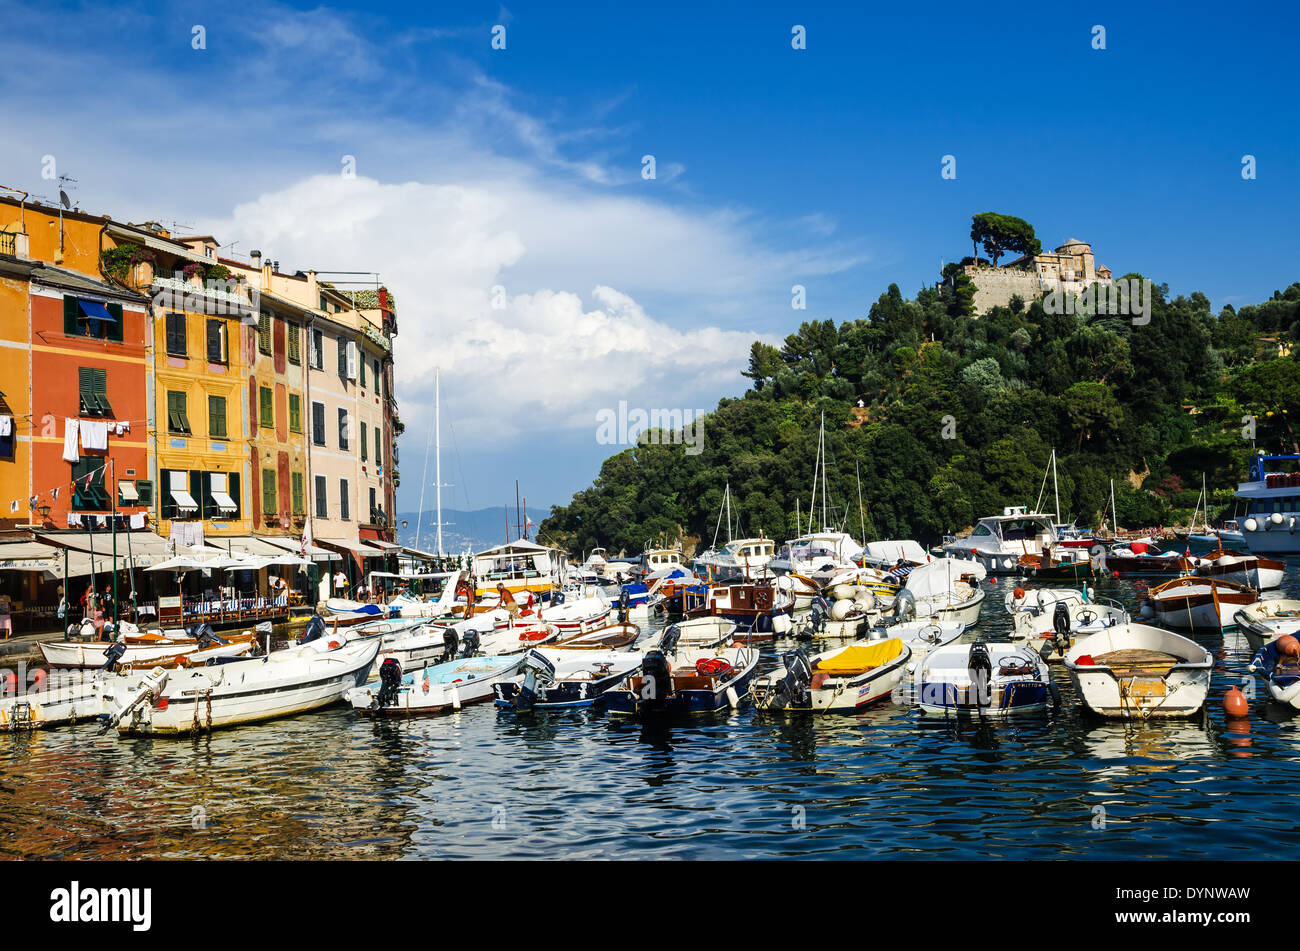 Portofino ist ein italienisches Fischerdorf und berühmt für seine malerischen Hafen gehobenen Resort. Ligurischen Meer, Mittelmeer. Stockfoto